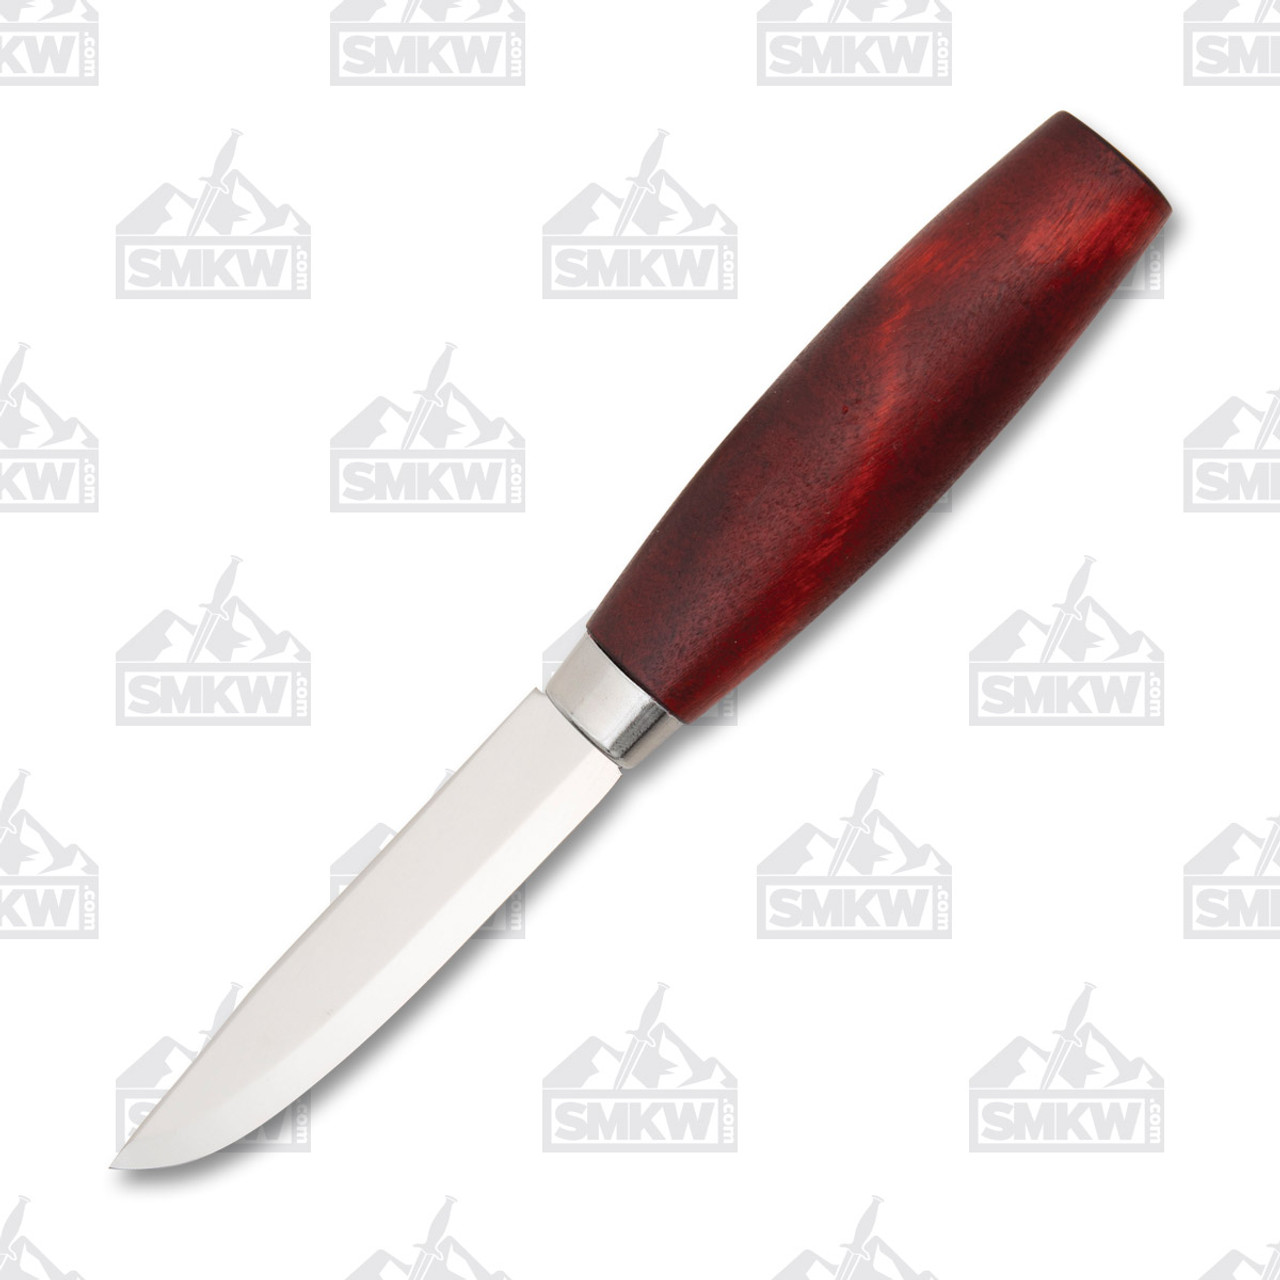 6.7 MORAKNIV CLASSIC NO. 1/0 RED WOOD CARBON STEEL KNIFE Mora Survival  Sweden